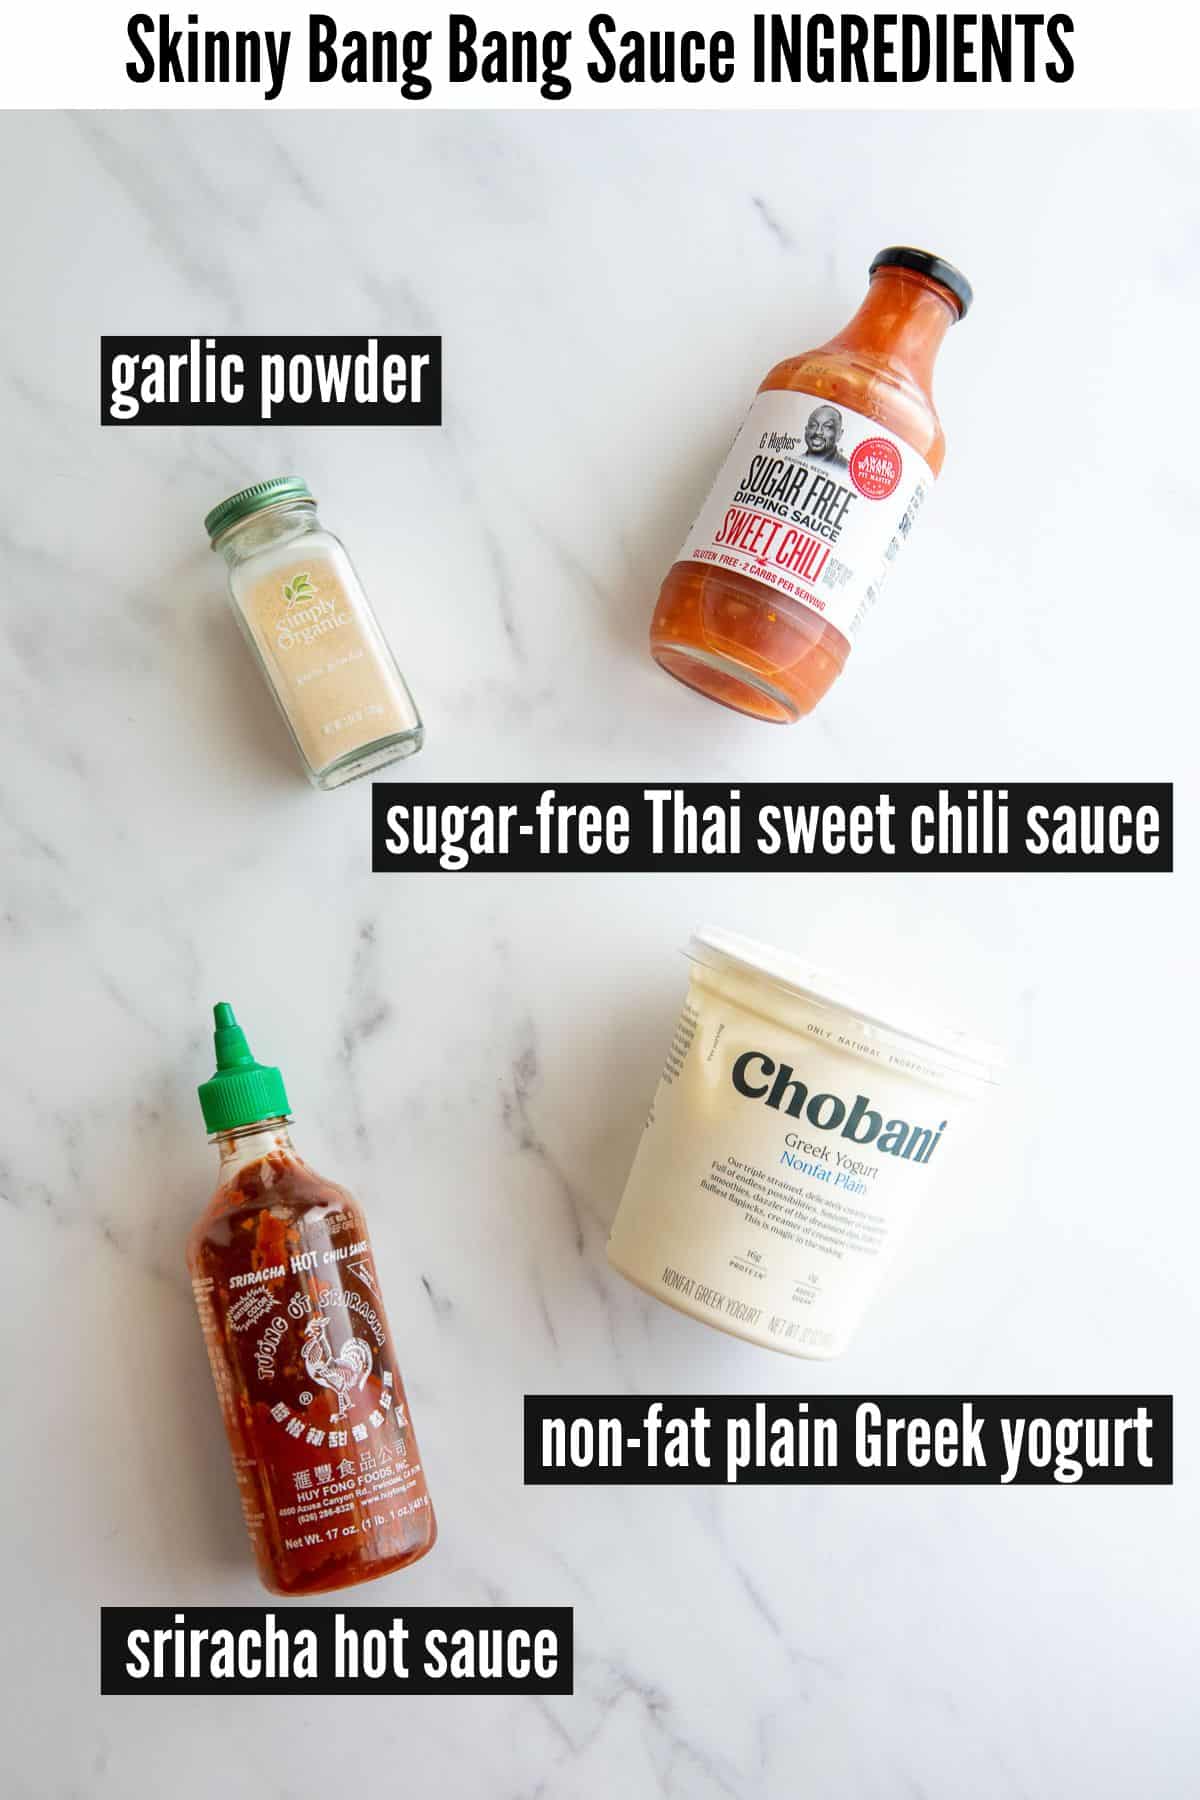 skinny bang bang sauce labelled ingredients.